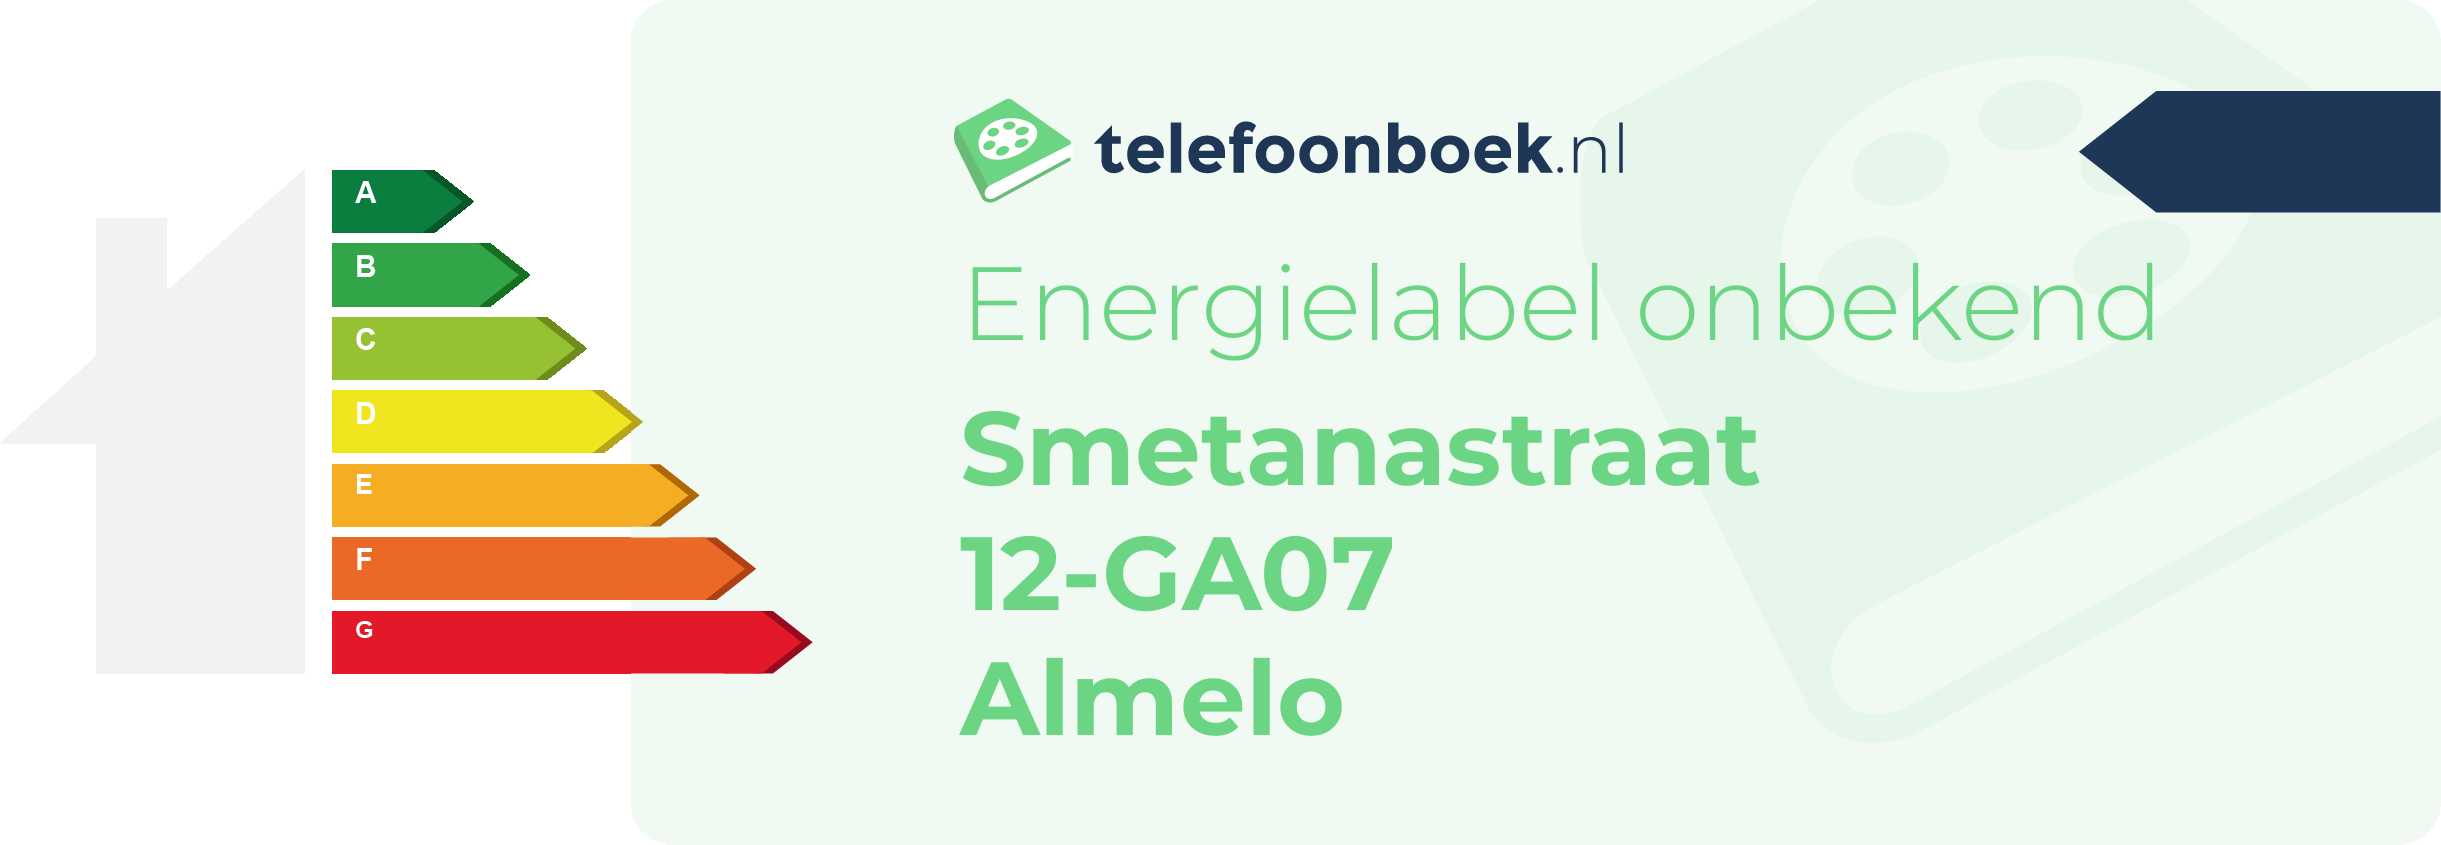 Energielabel Smetanastraat 12-GA07 Almelo